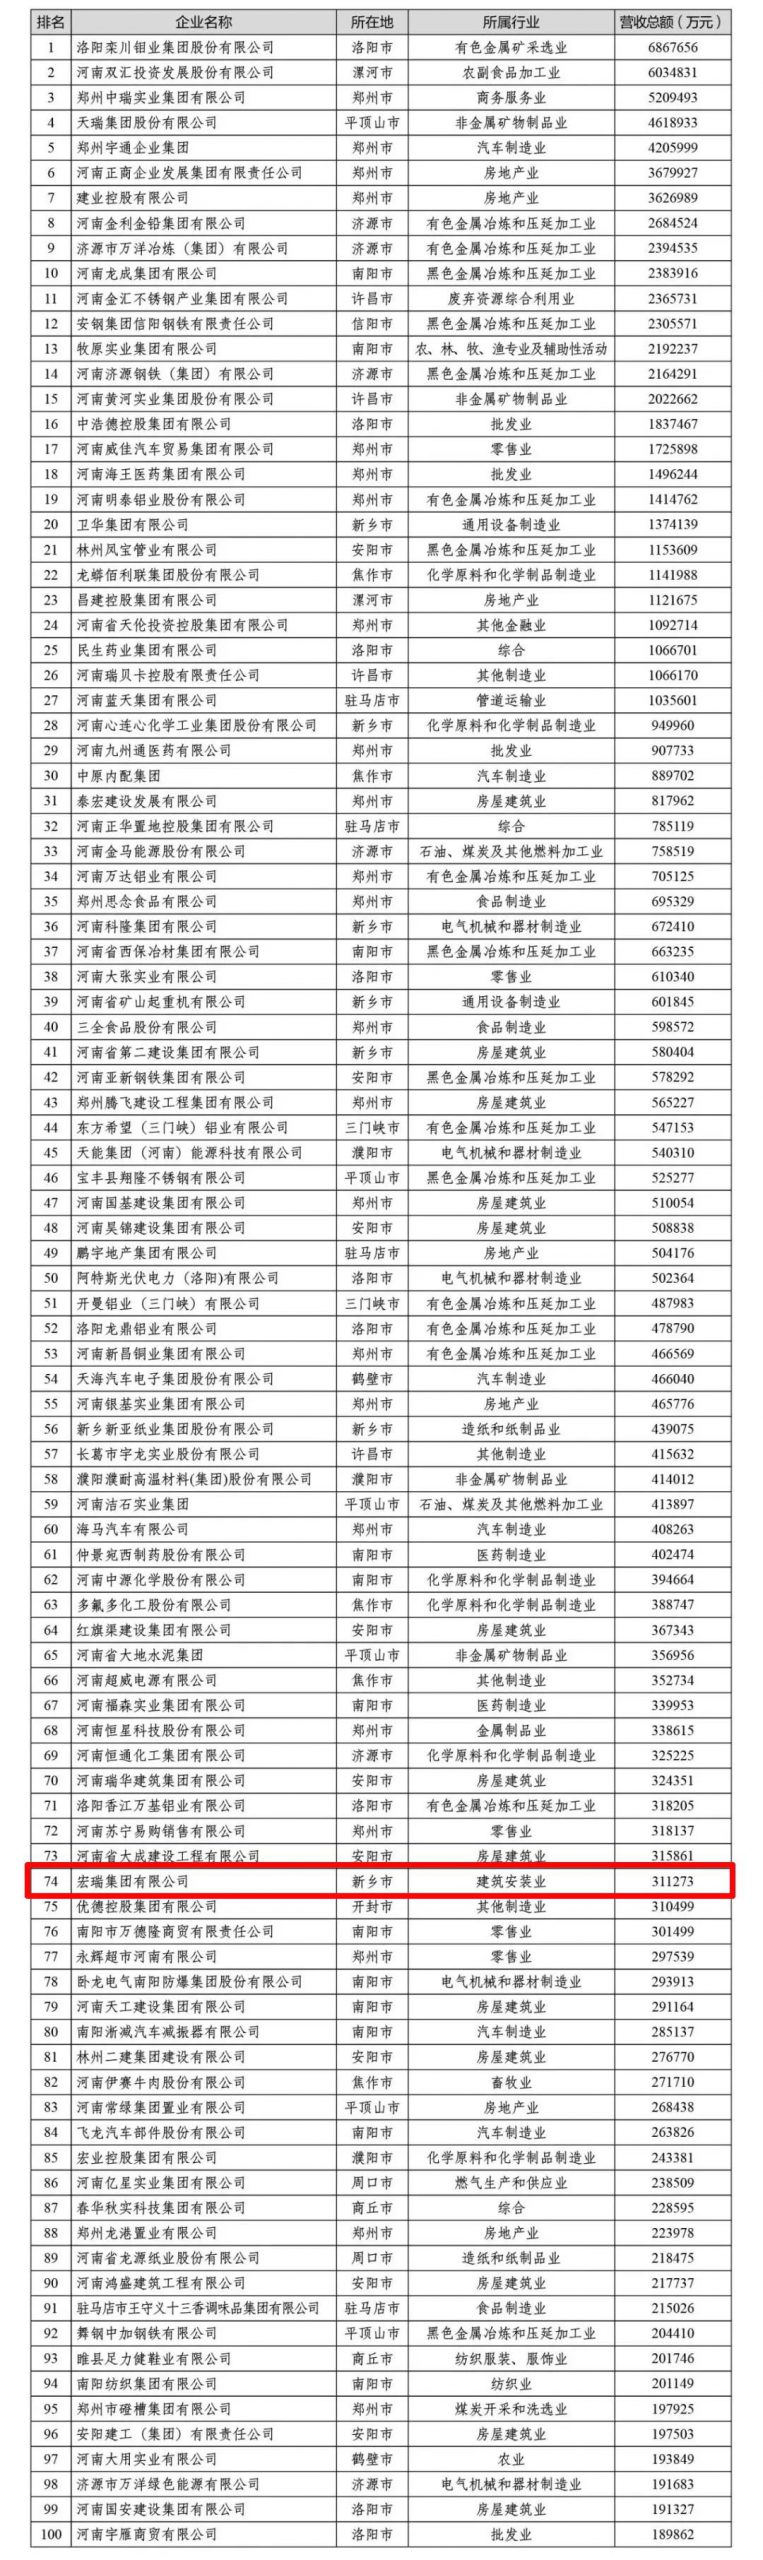 【重磅】宏瑞集团又双叒荣耀上榜河南省民营企业100强榜单